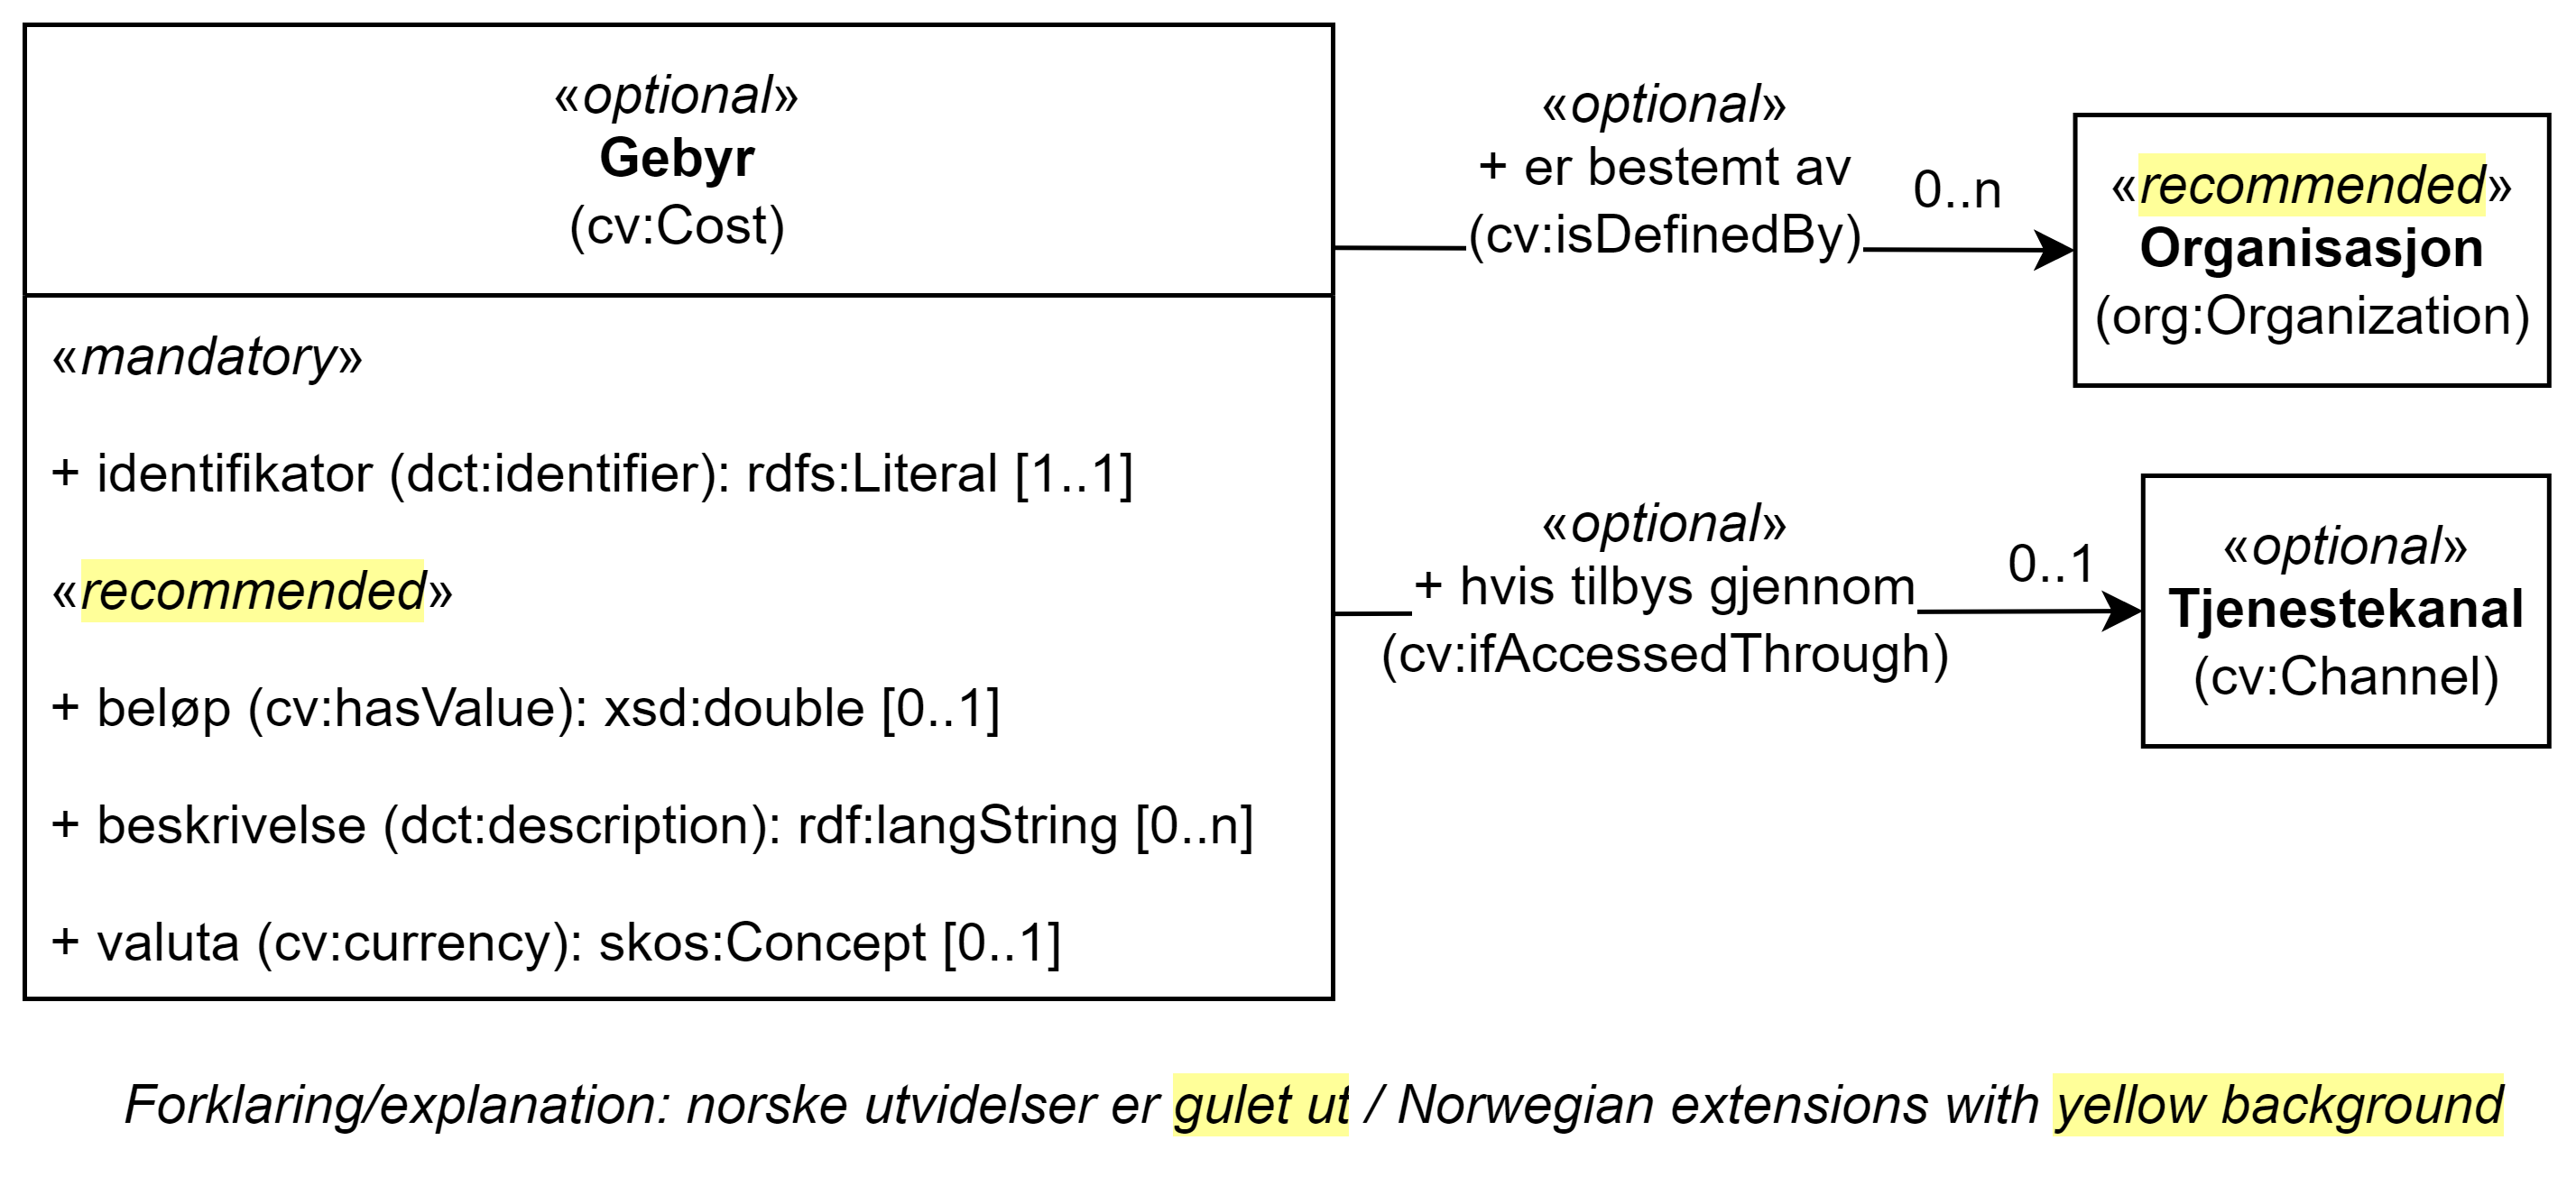 UML-diagram med klassen Gebyr, dens egenskaper og dens relasjoner til to andre klasser. Norske utvidelser er gulet ut. Innholdet i diagrammet er forklart i teksten.